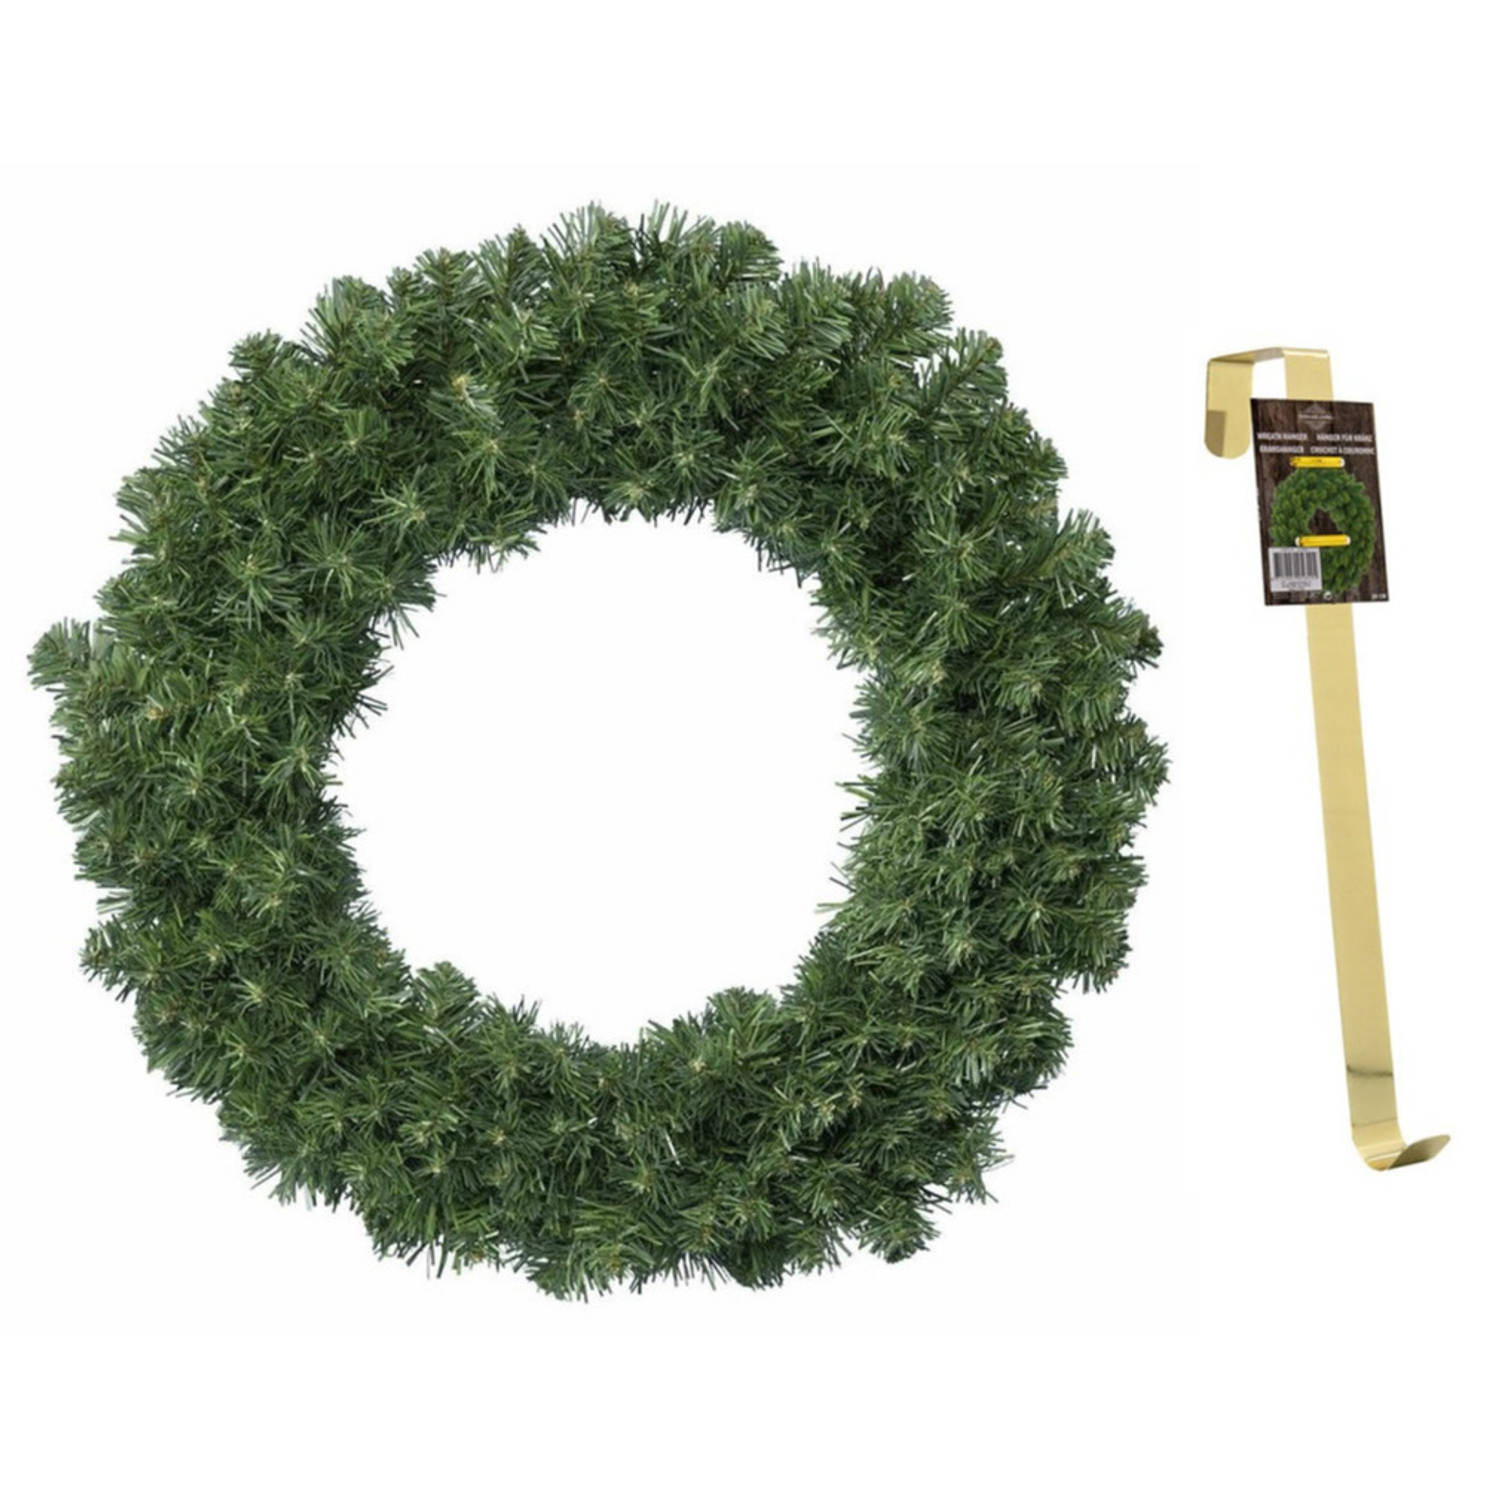 Groene kerstkrans-dennenkrans 60 cm met 200 takken kerstversiering en met gouden hanger Kerstkransen